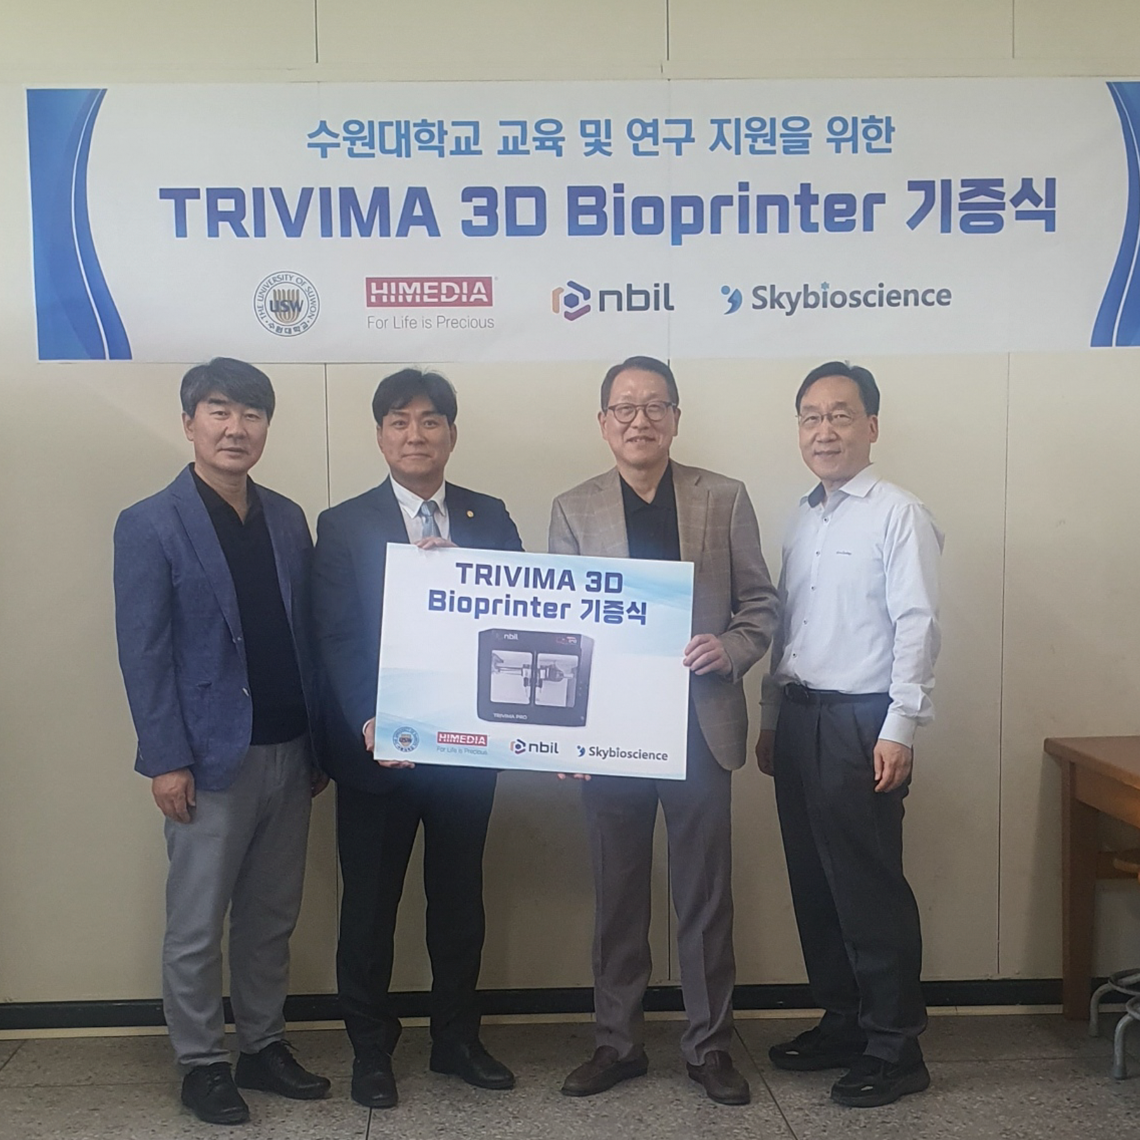 (주)스카이바이오사이언스, 수원대학교 바이오공학 전공에 연구 교육용 기기 3D바이오프린터 기증